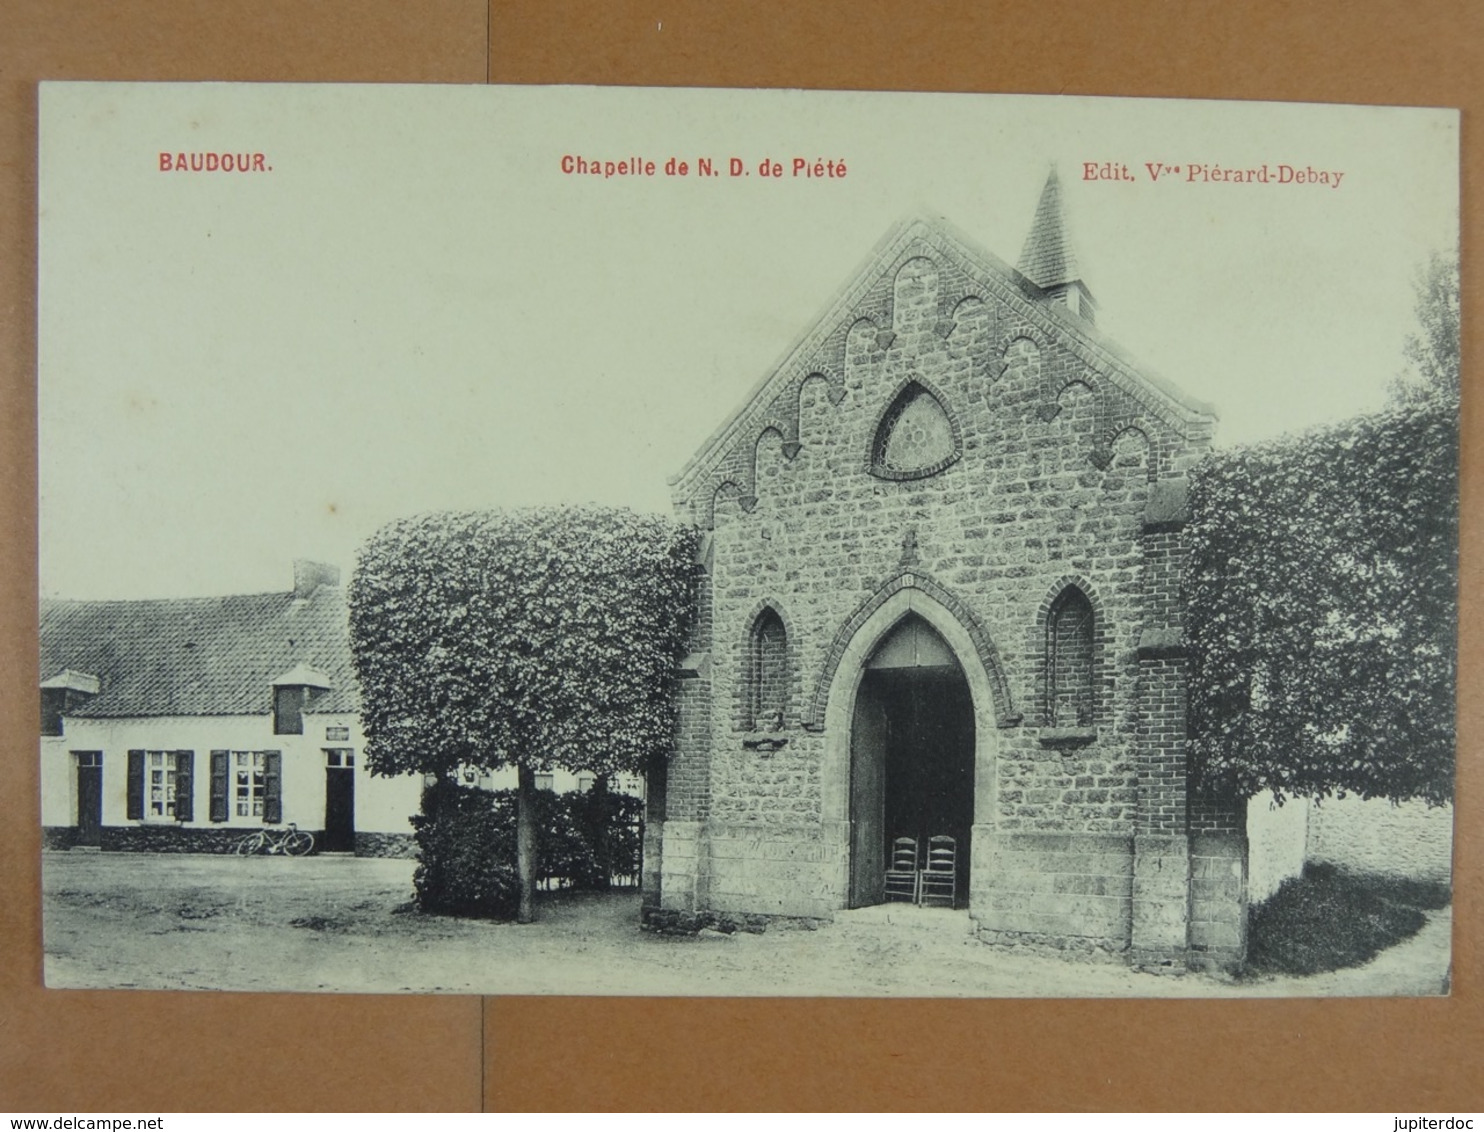 Baudour Chapelle De N.D. De Piété - Saint-Ghislain